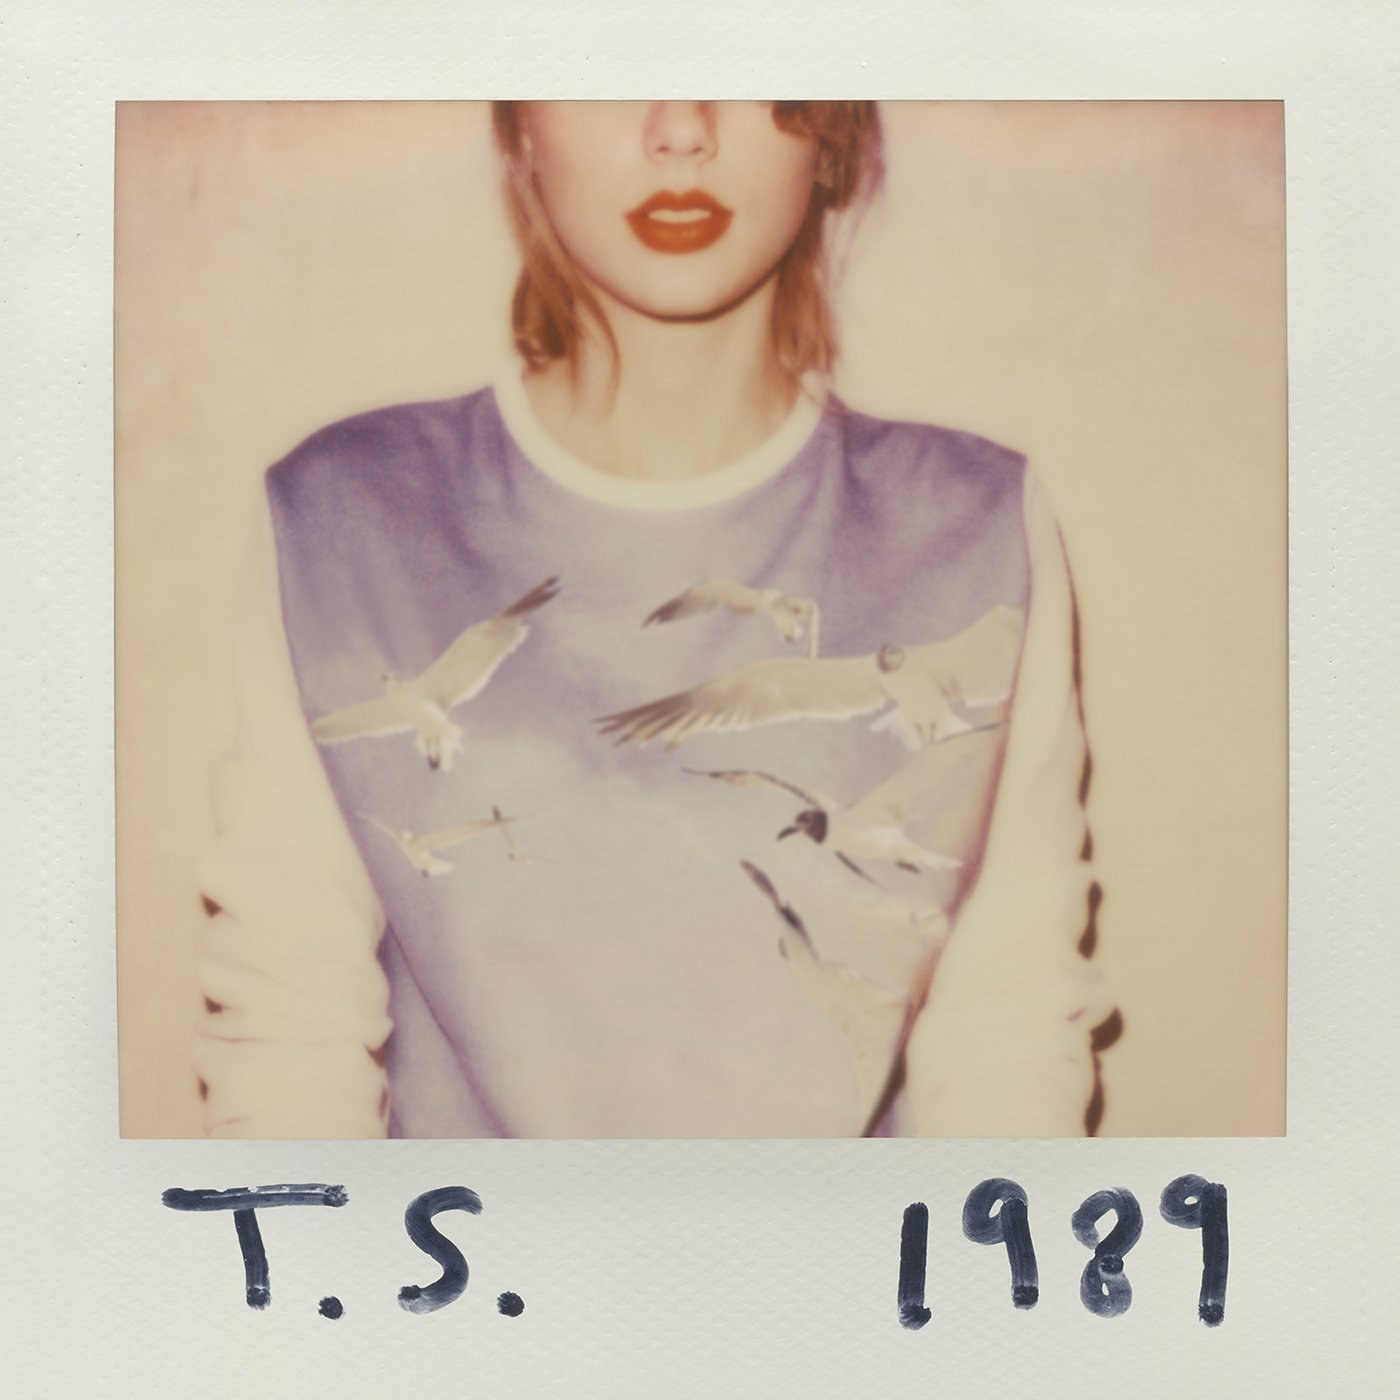 Swift#x27;s quot;1989quot; album cover